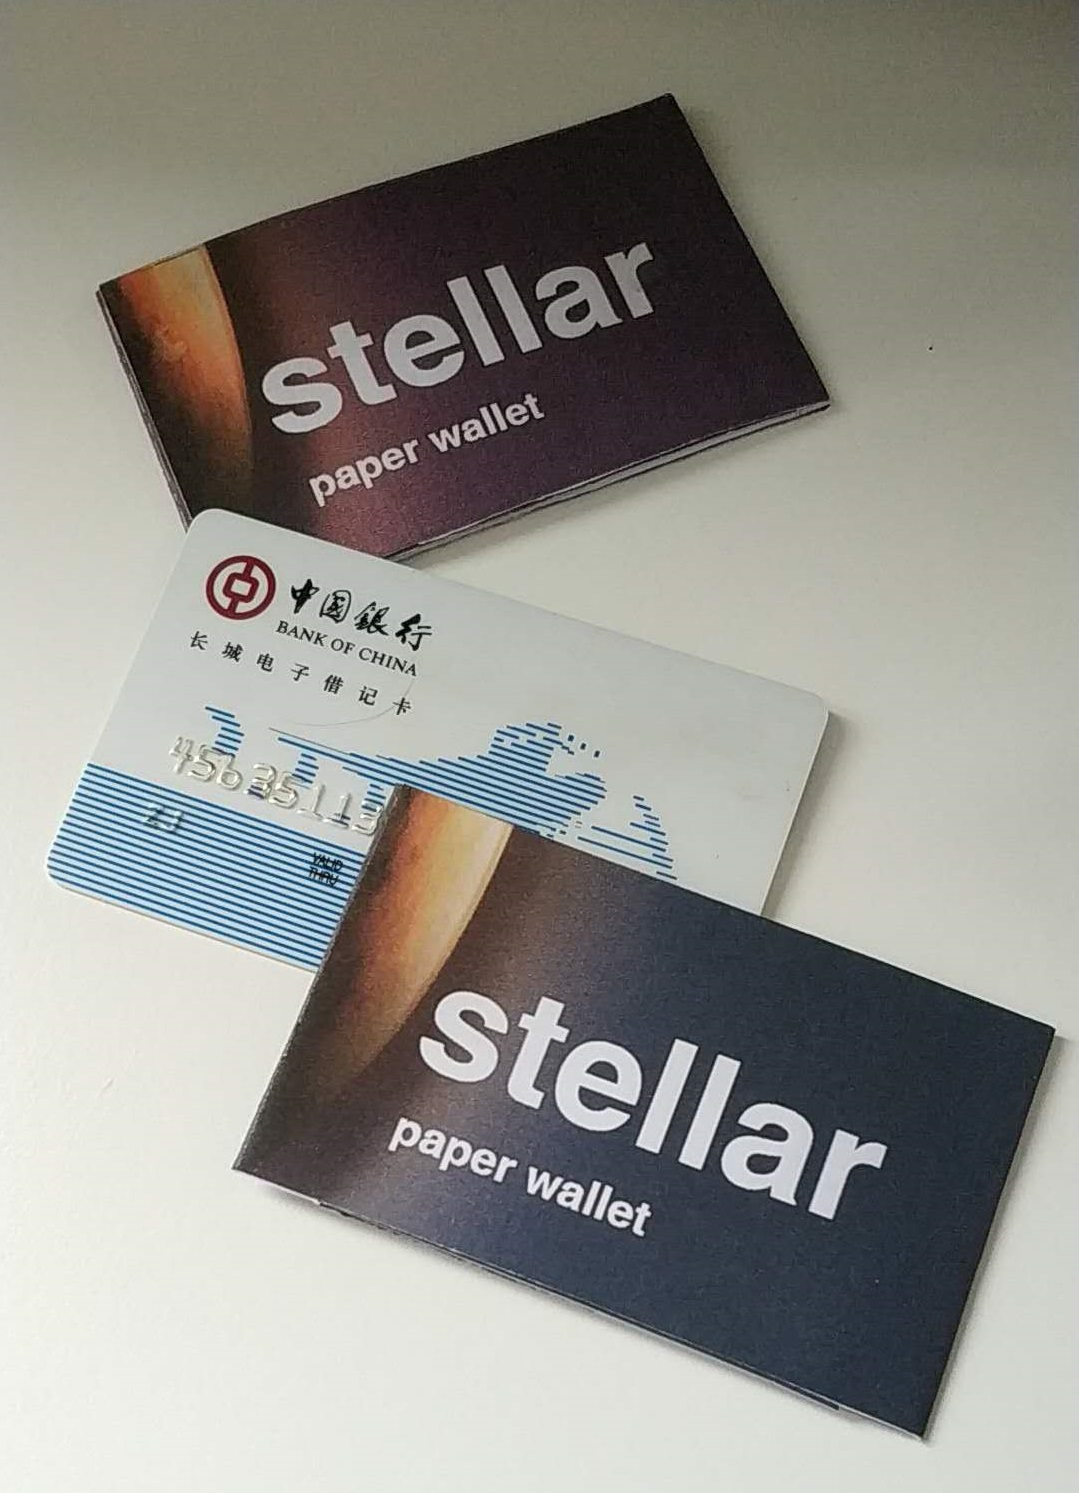 Stellar wallet on paper - GalacticTalk - Stellar Forum